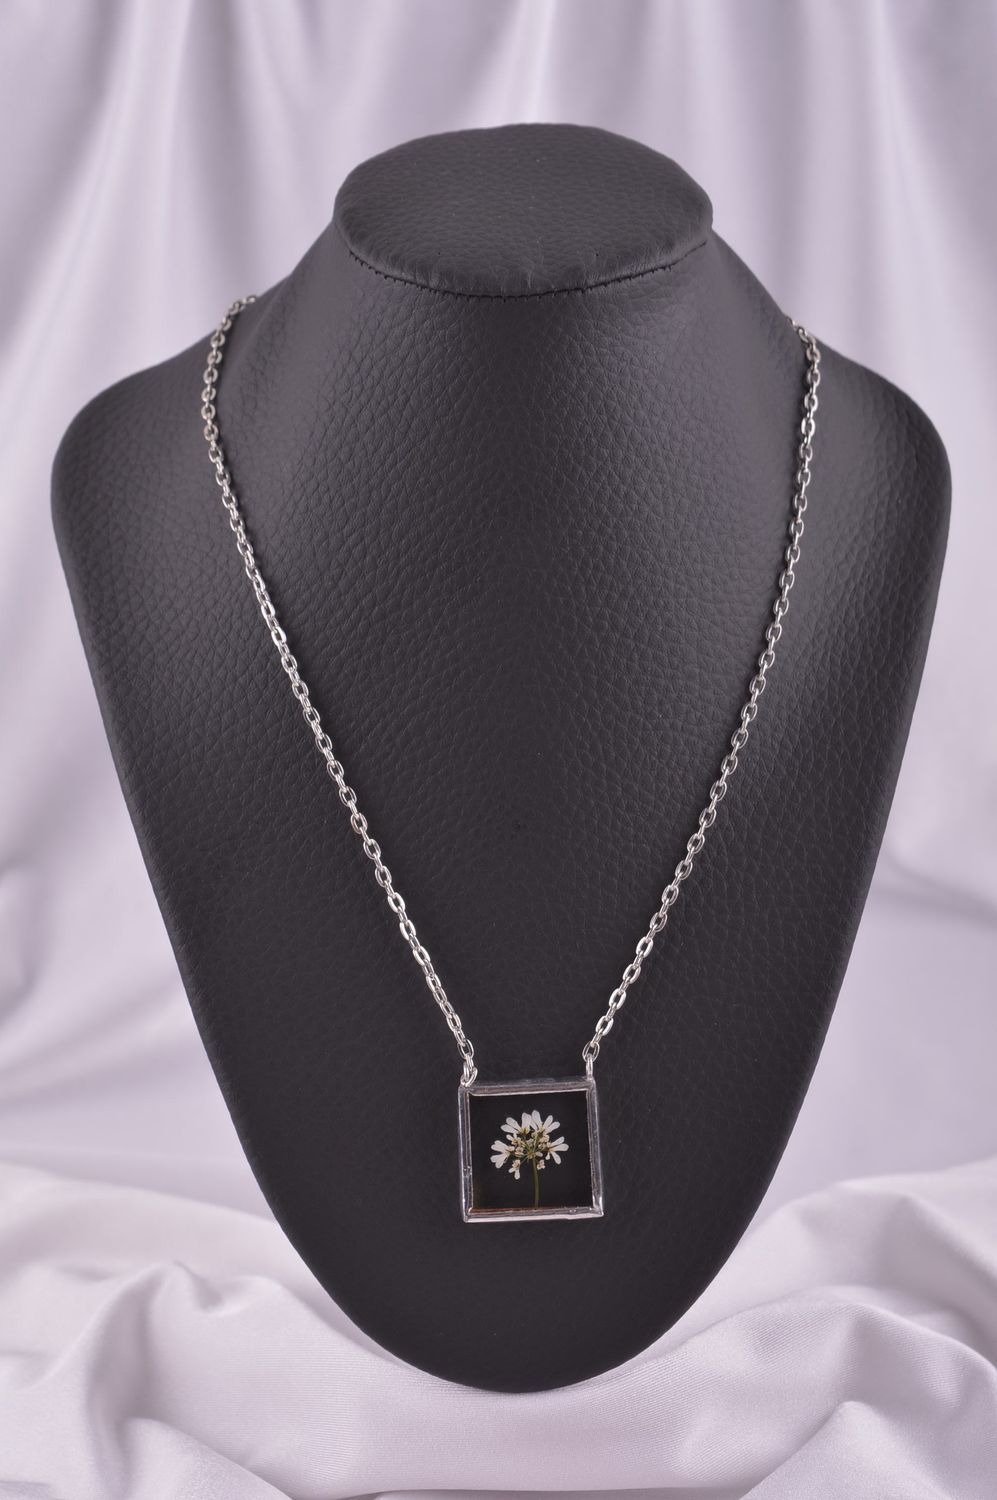 Beautiful handmade glass pendant fashion accessories beautiful jewellery photo 1